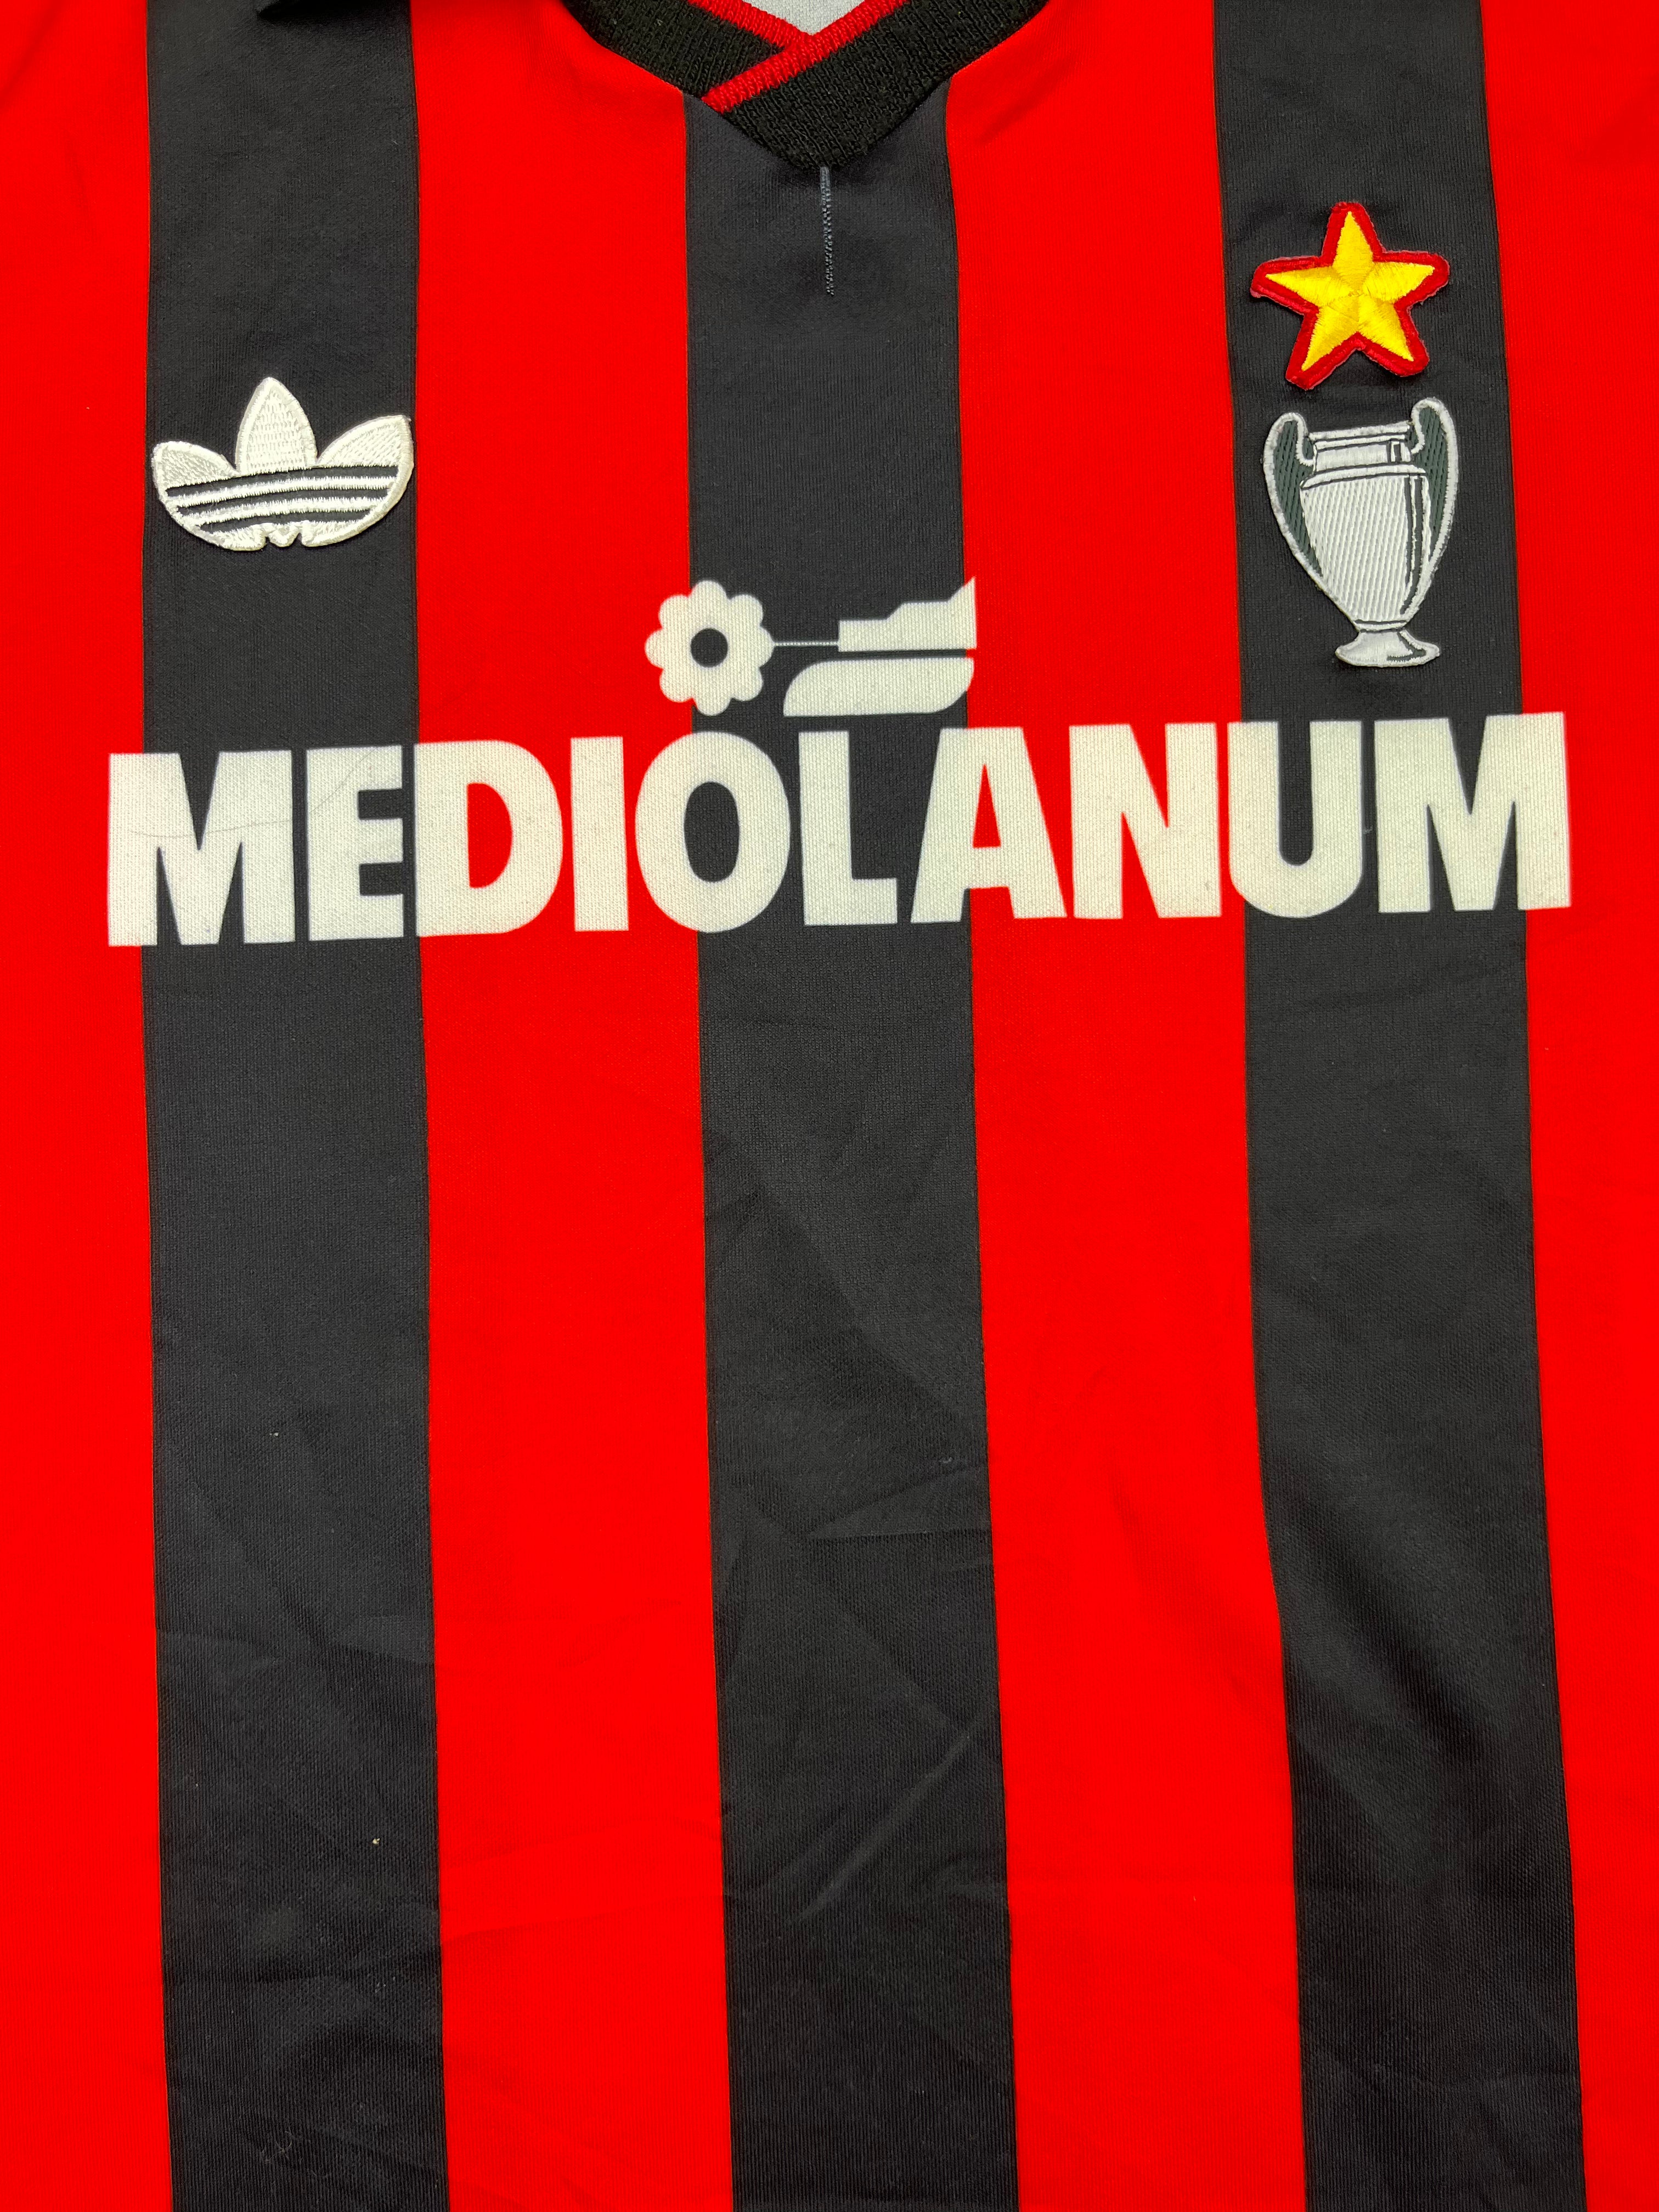 Maillot AC Milan Domicile L/S 1990/91 (M) 8/10